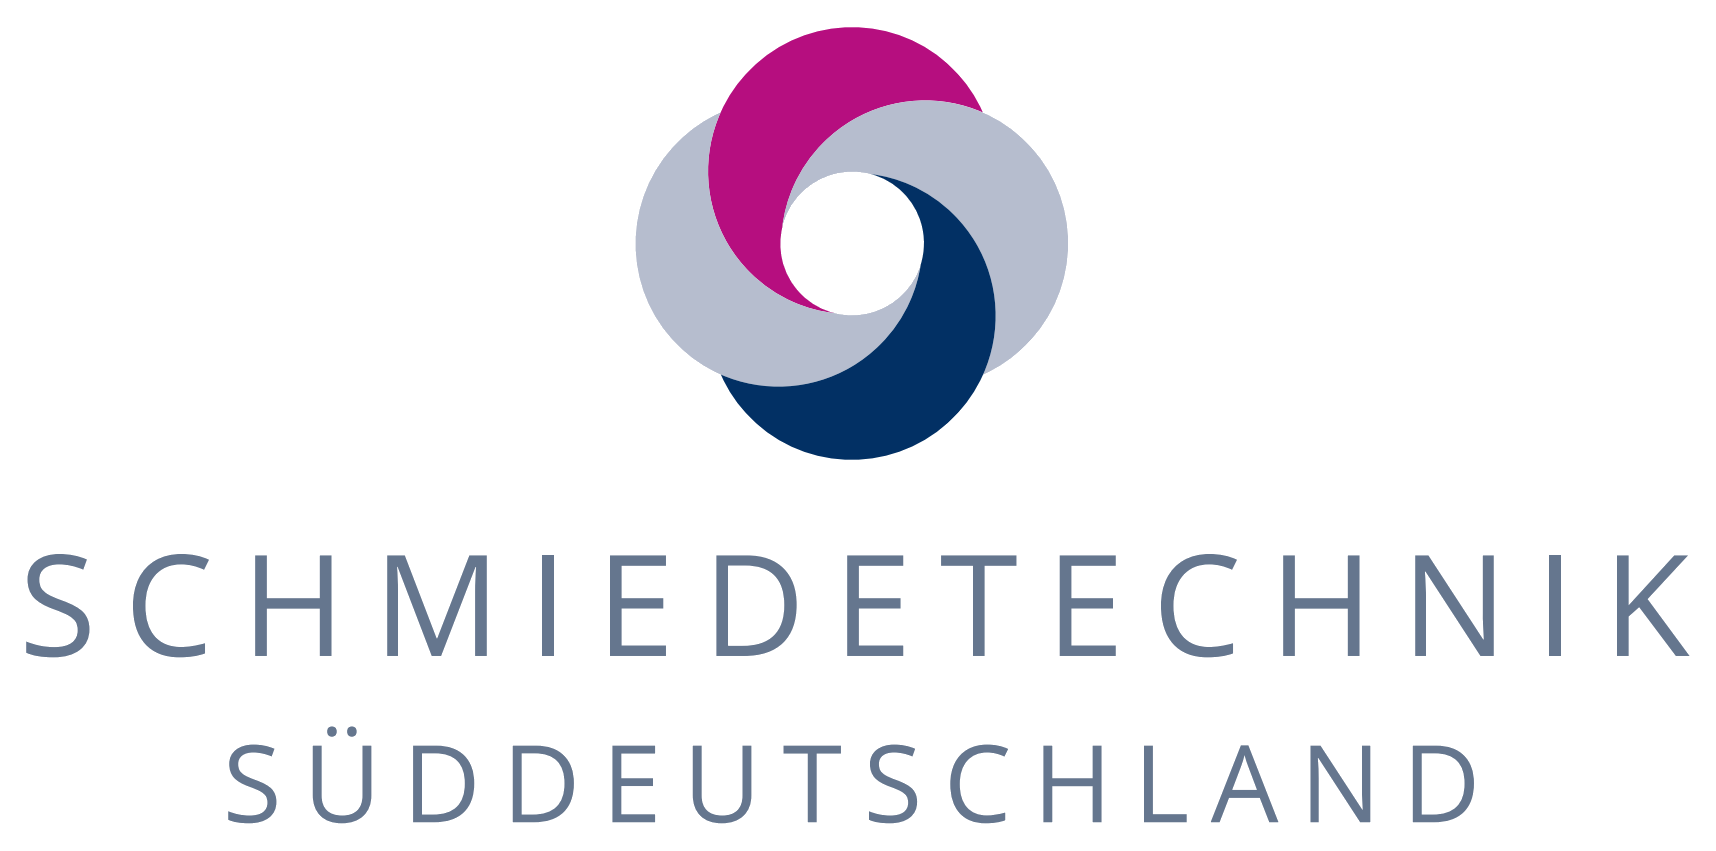 Schmiedetechnik Süddeutschland GmbH Logo